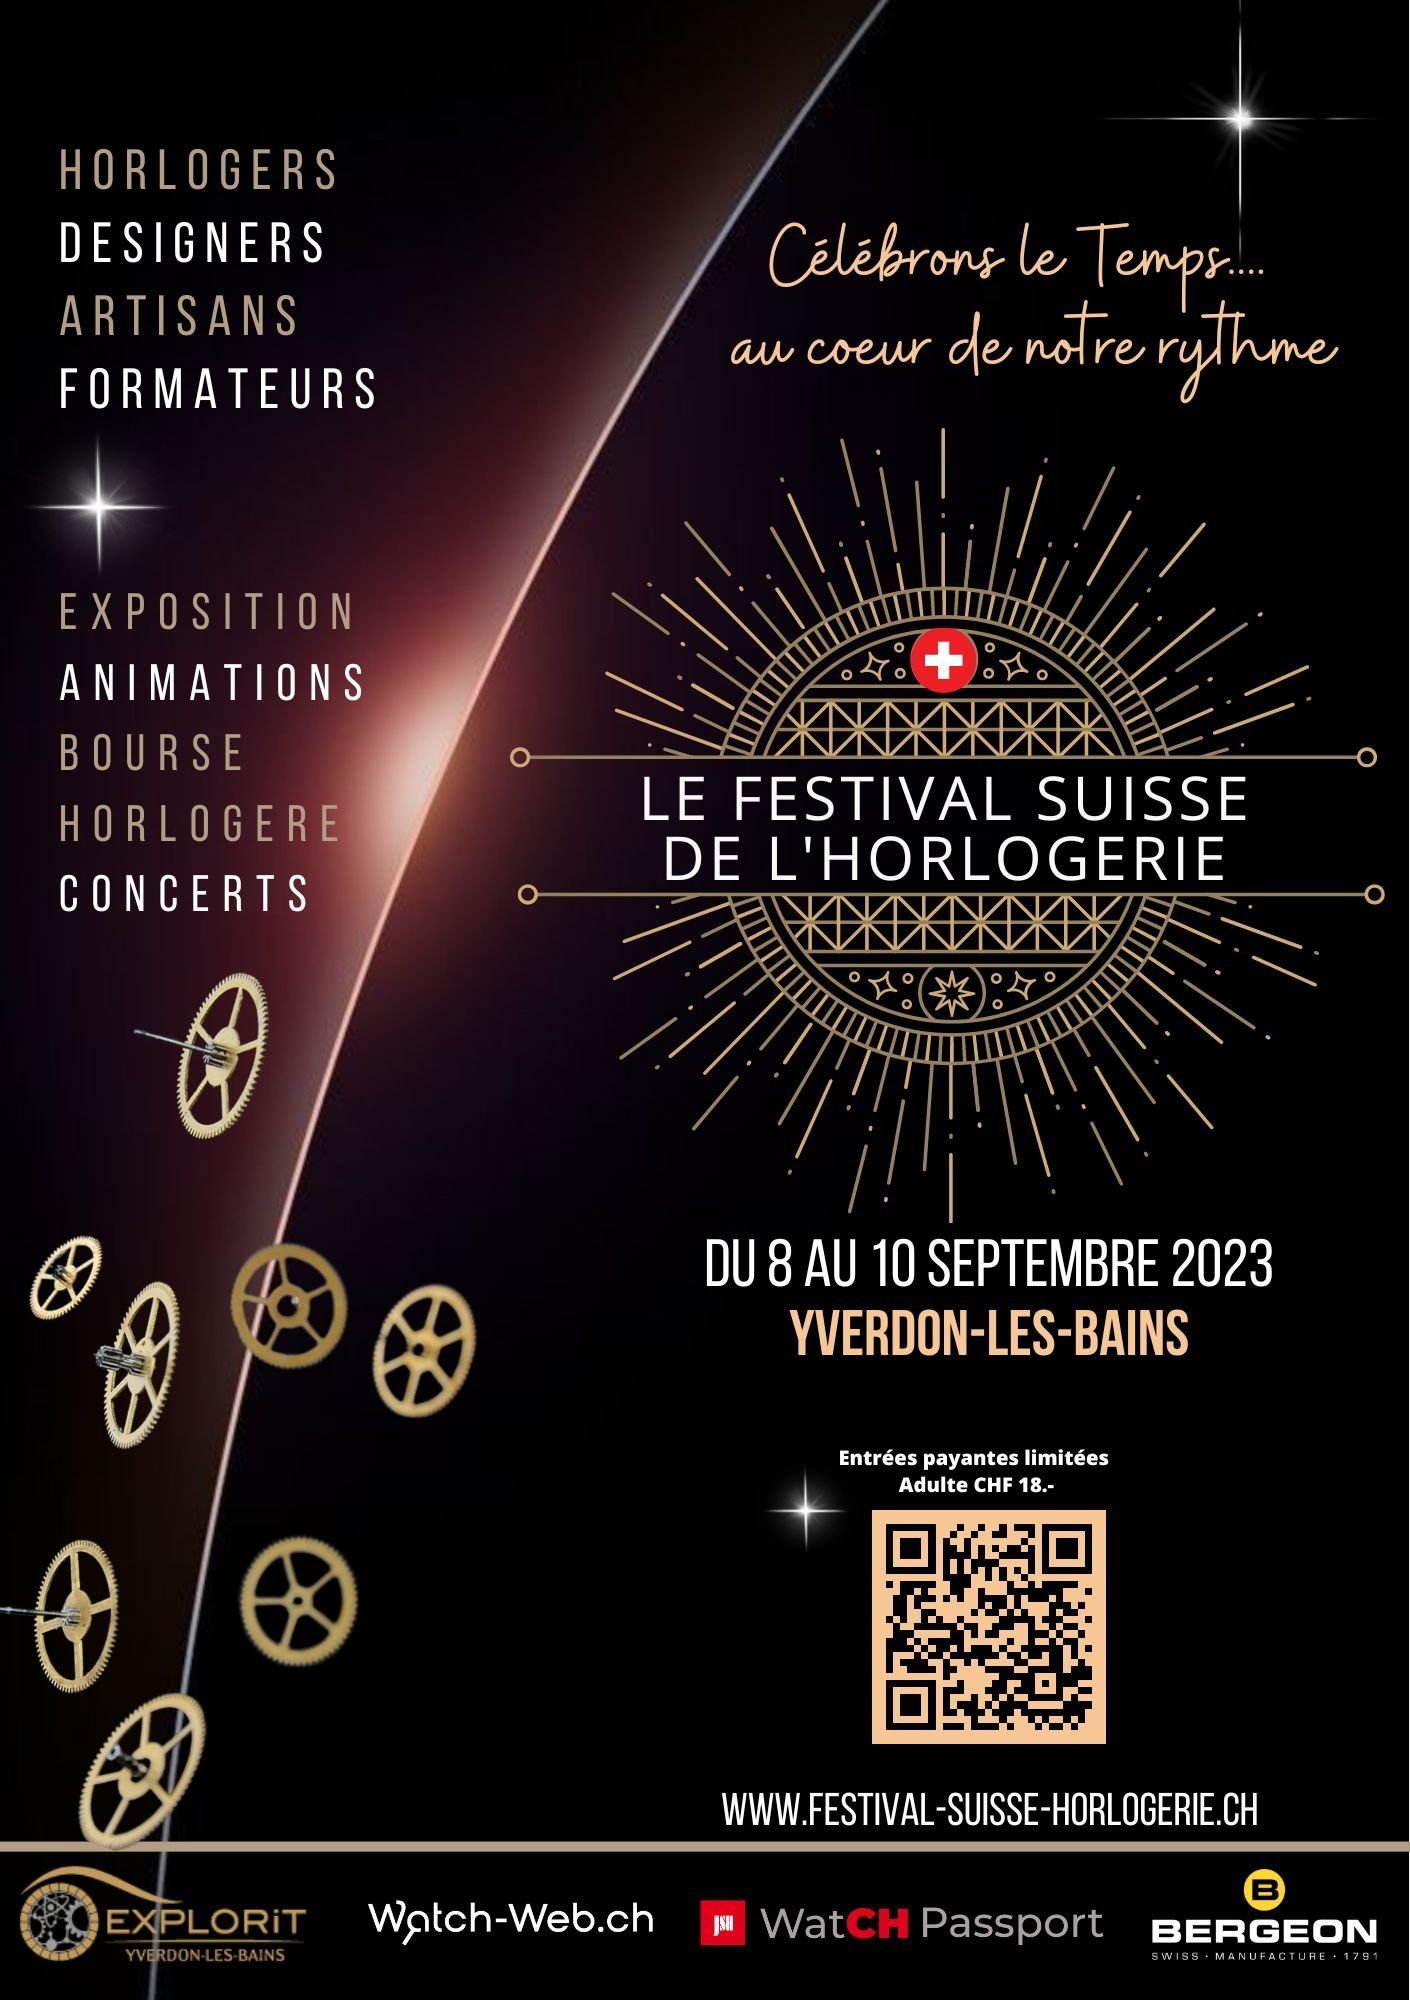 The Festival Suisse de l'Horlogerie